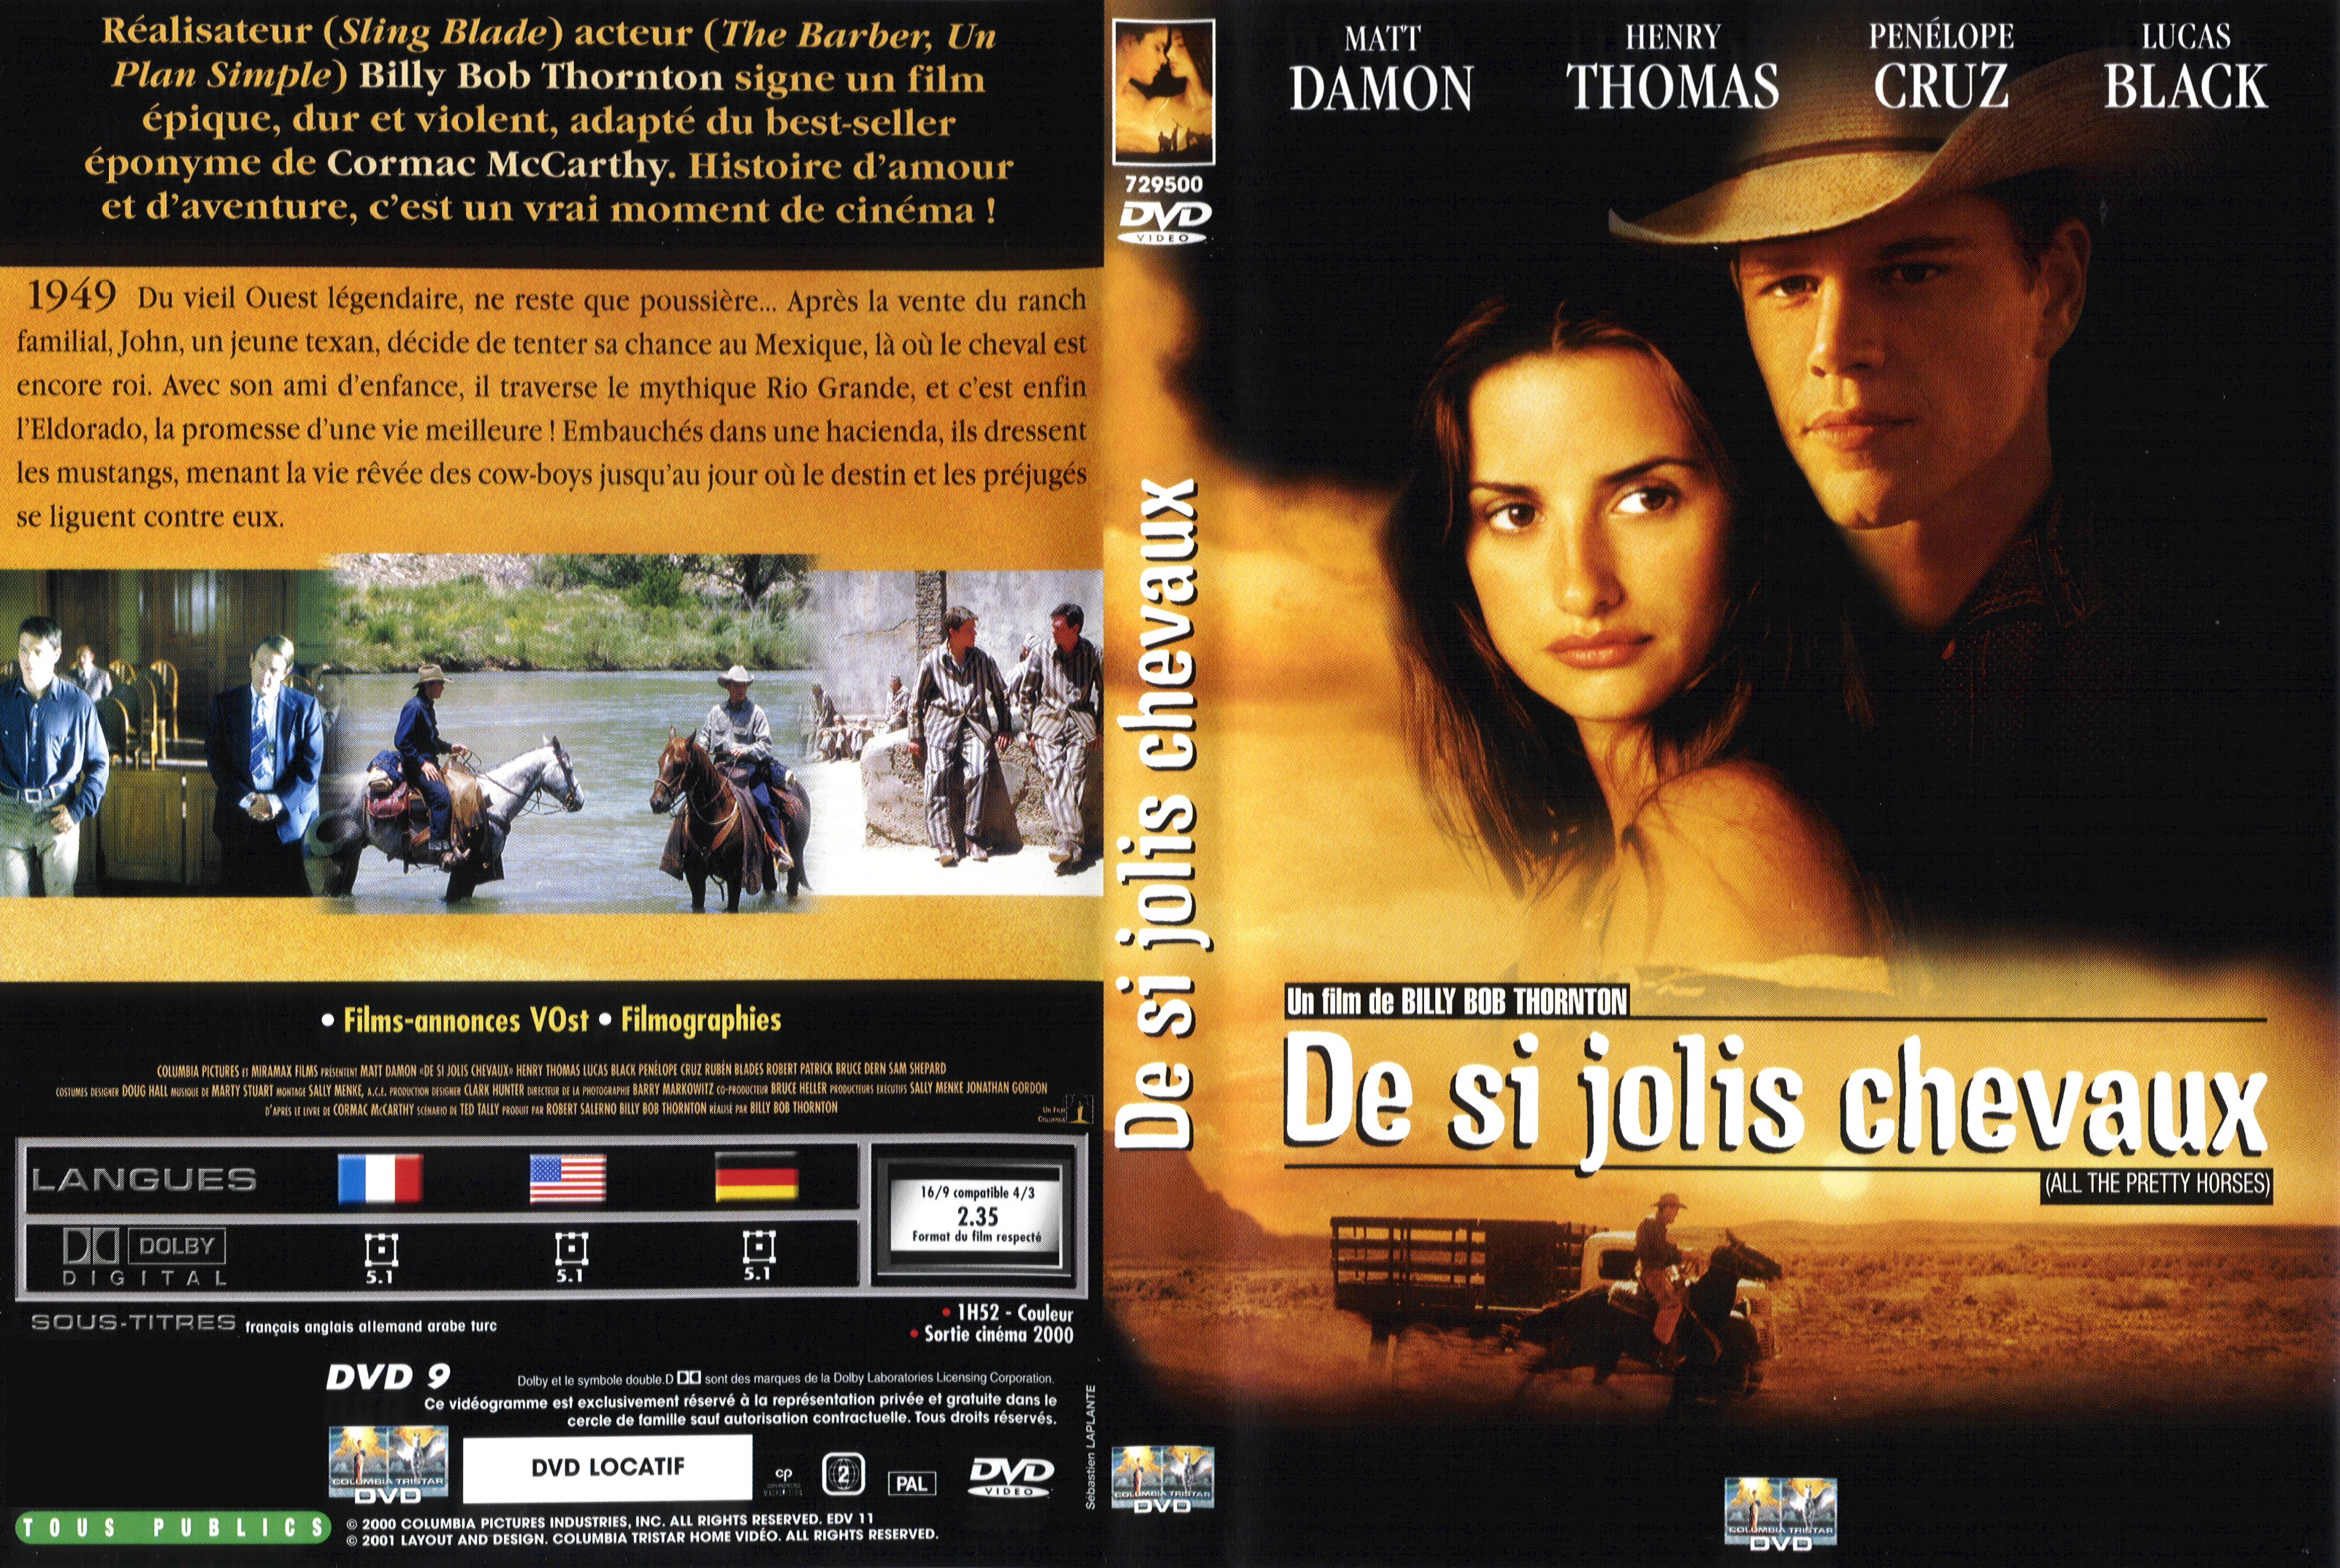 Jaquette DVD De si jolis chevaux